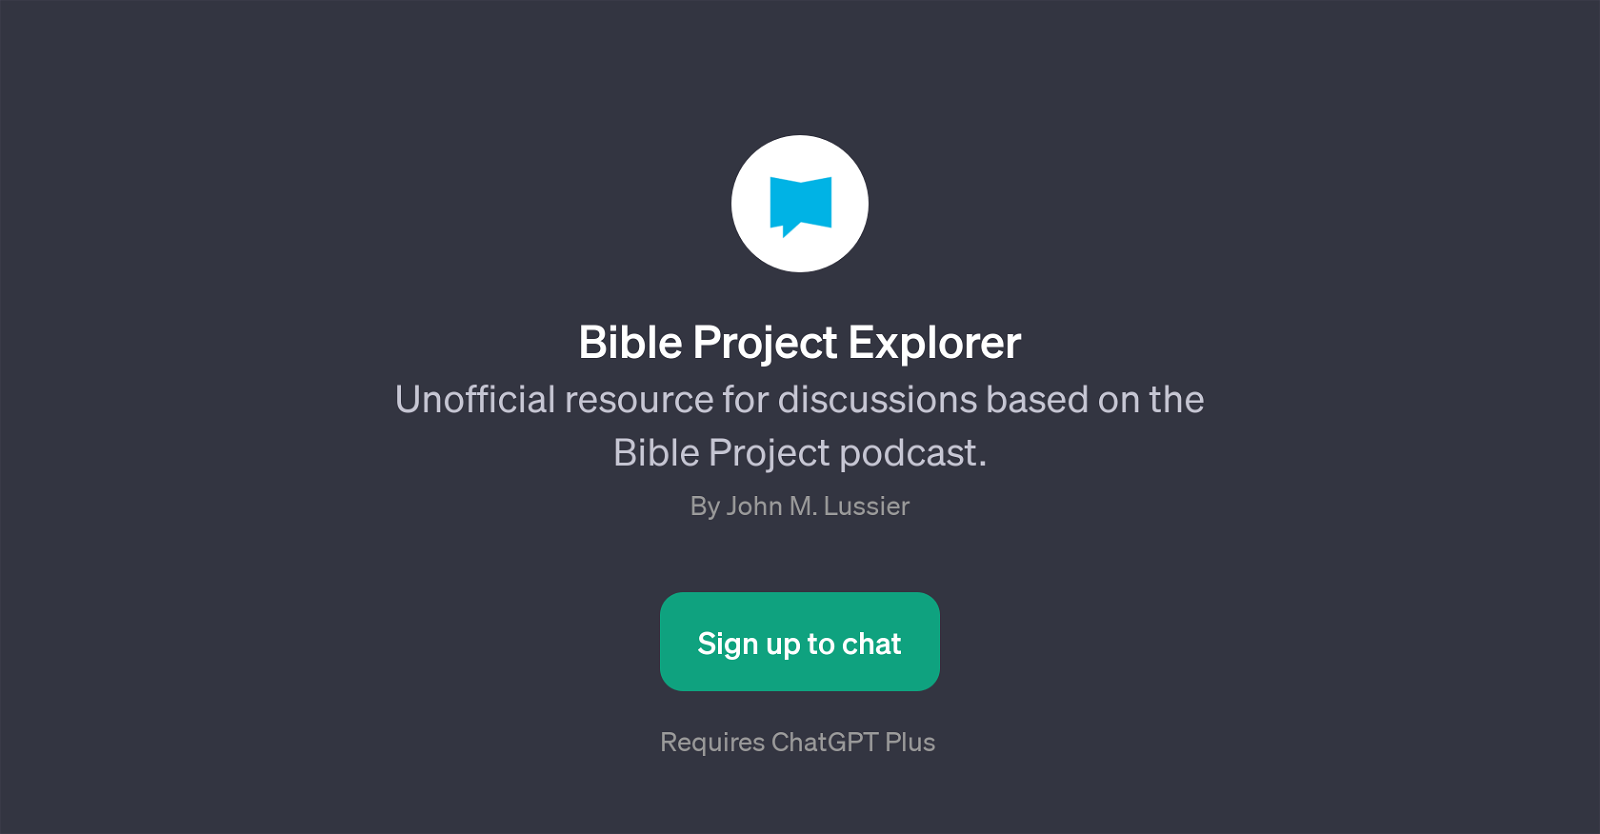 Bible Project Explorer website